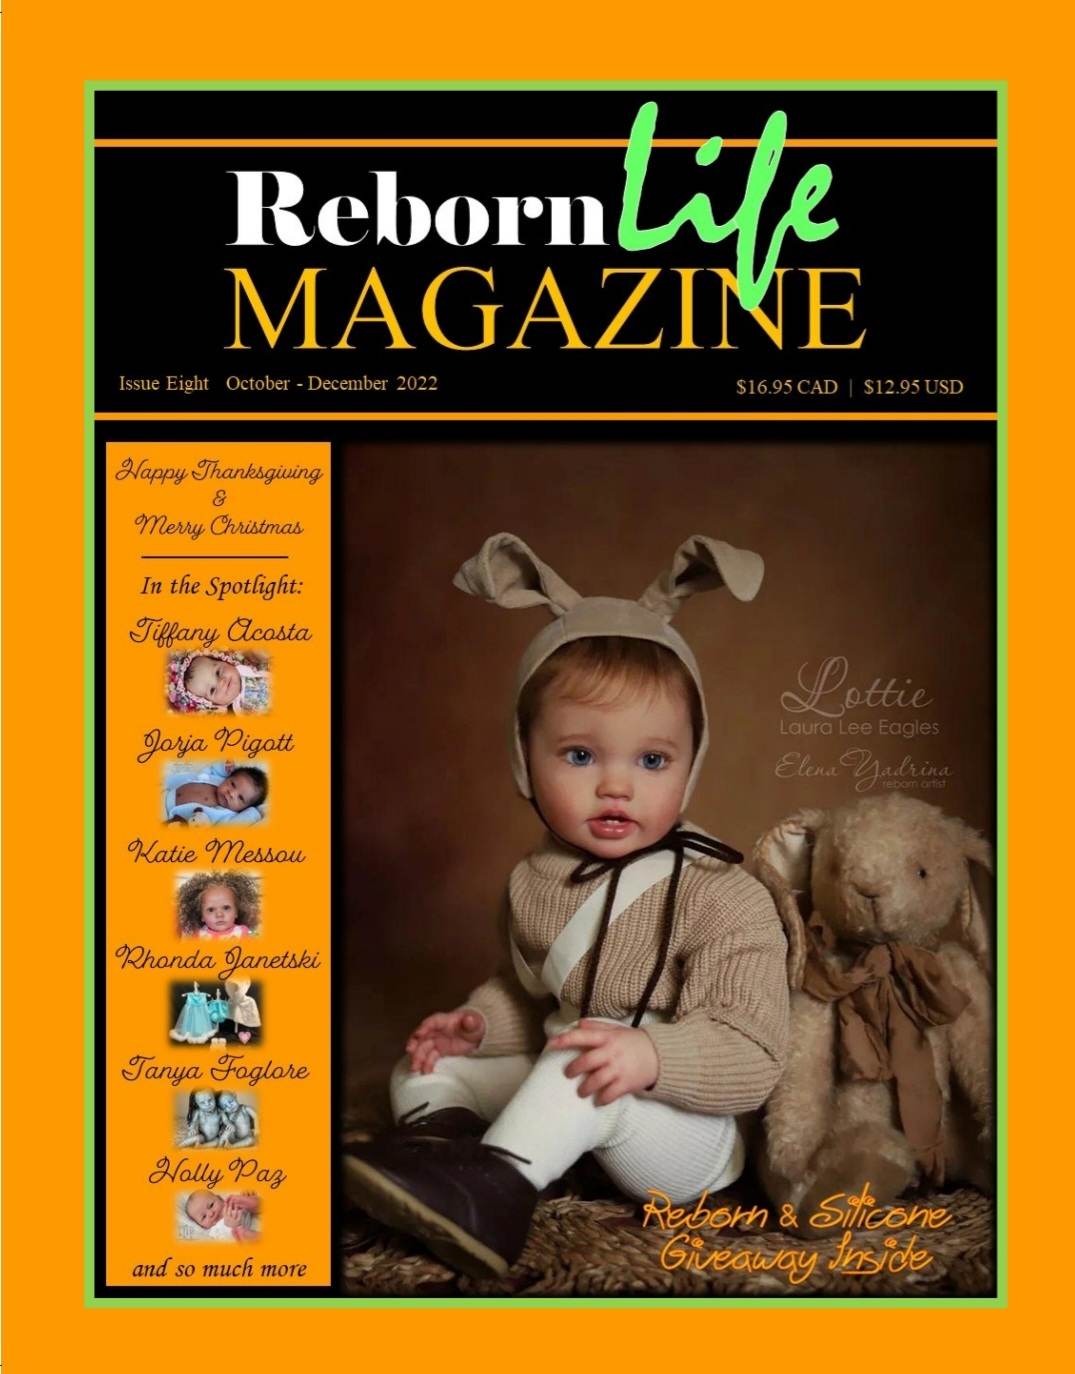 Reborn Life Magazine Issue Eight Oct - Dec - 2022